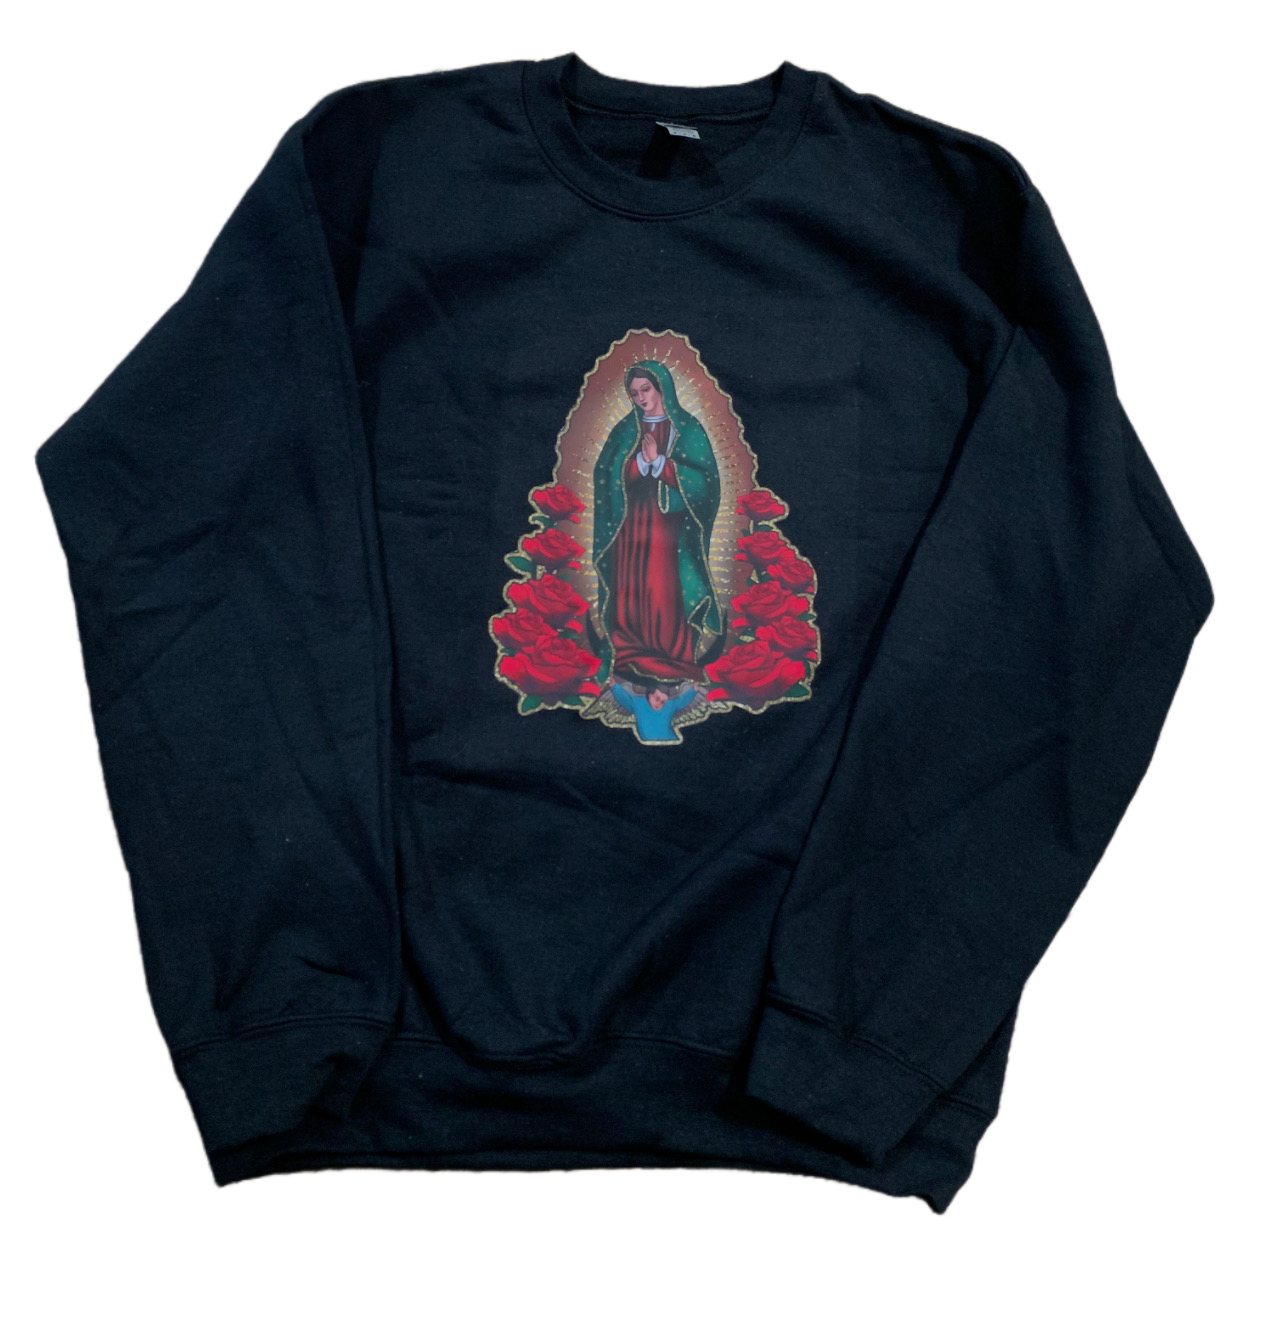 Virgencita Sweater